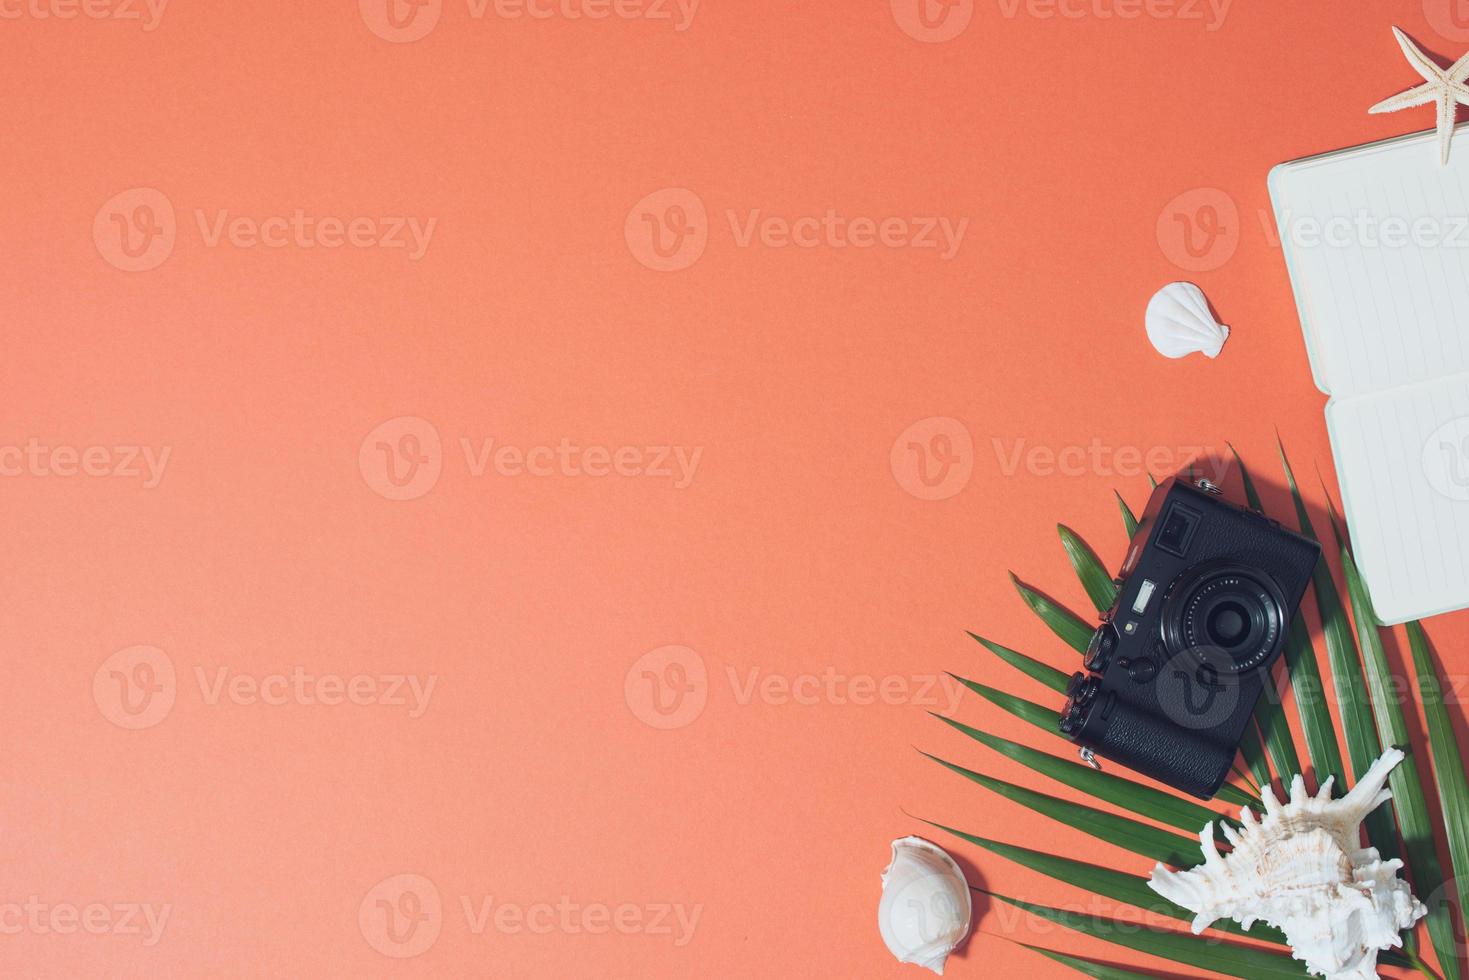 Bunte Sommerferienmode flach lag - Strohhut, Kamera, Sonnenbrille, Muscheln auf leuchtend orangefarbenem Hintergrund foto